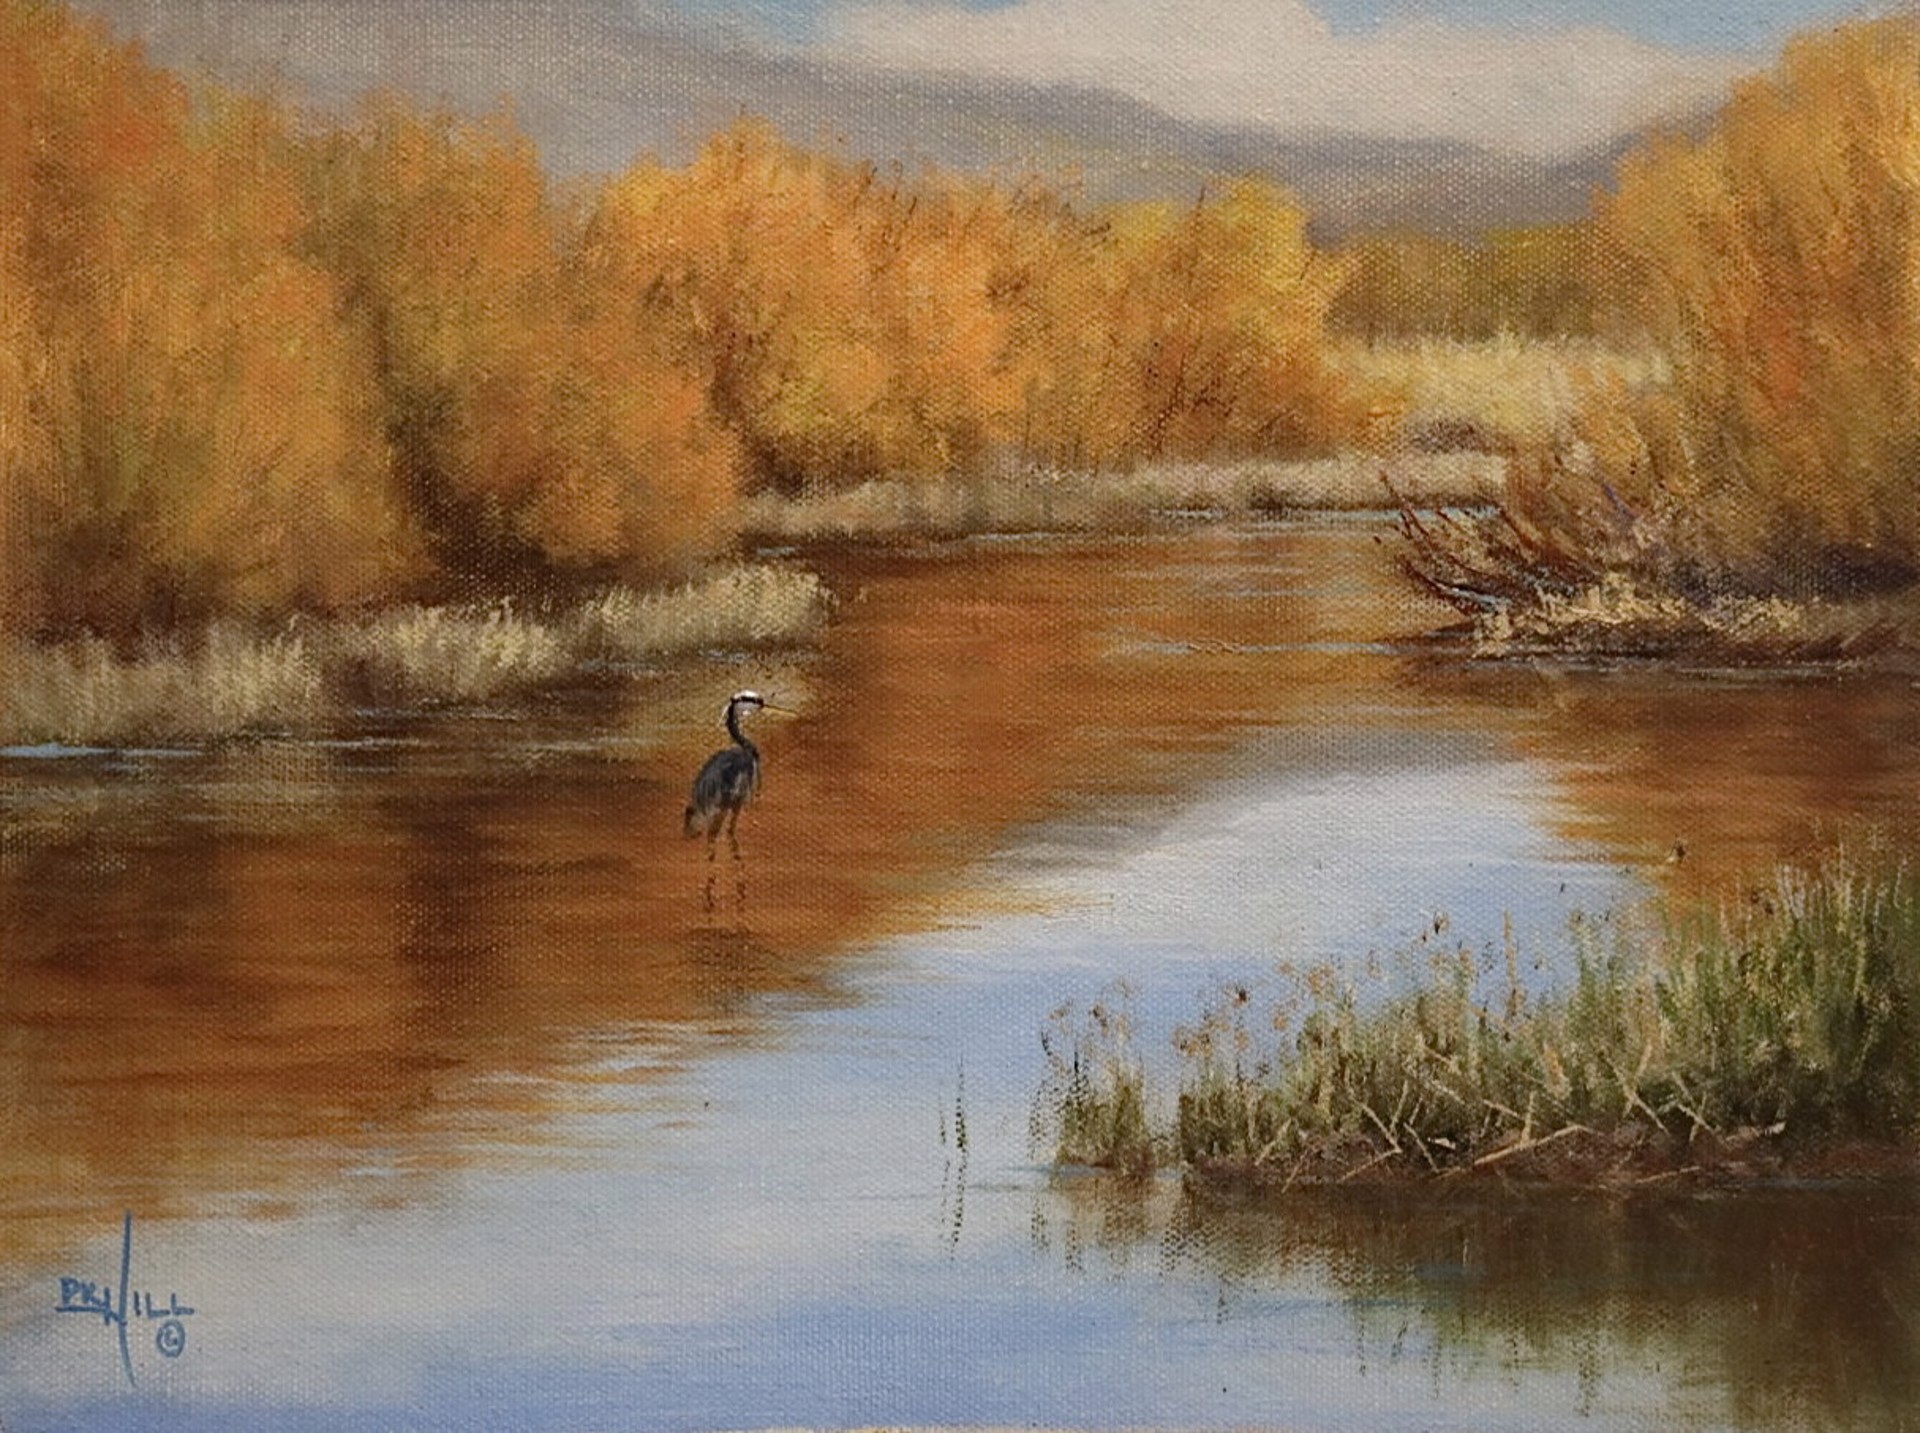 Rock Creek Heron by Paul Hill